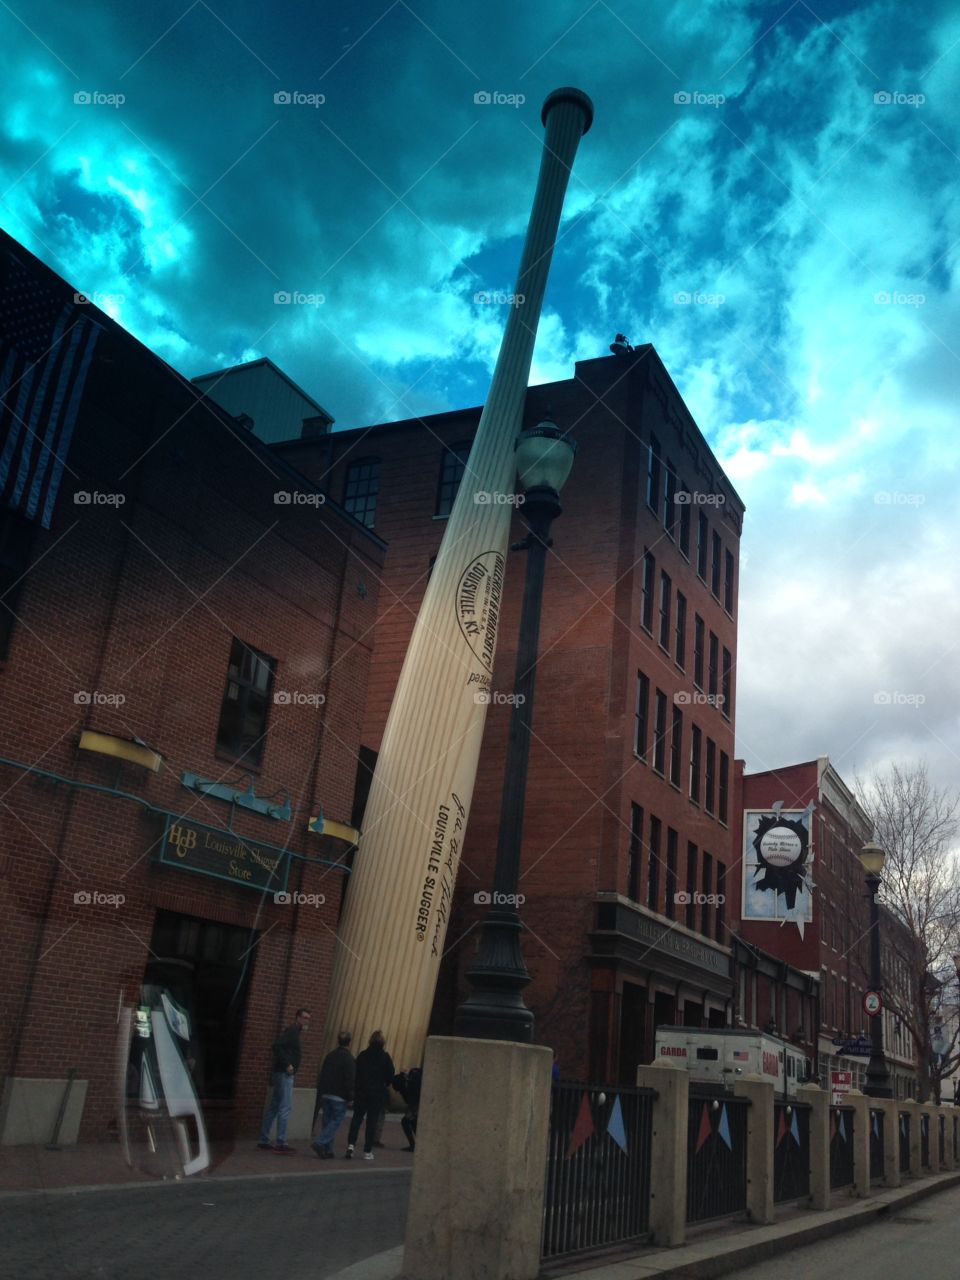 Louisville Slugger baseball bat museum Louisville Kentucky 